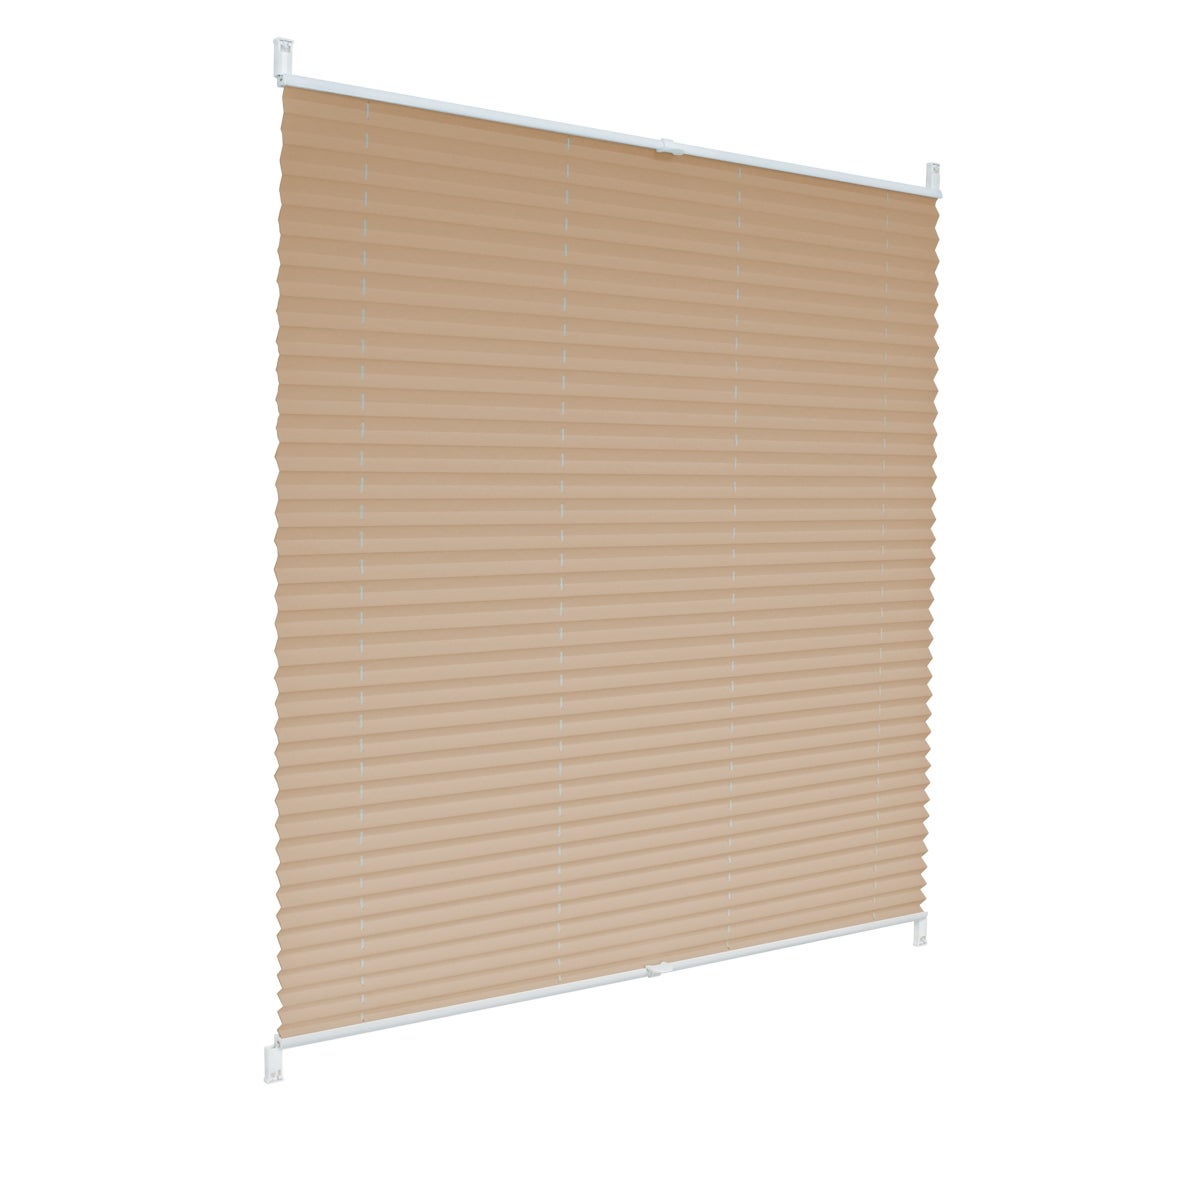 Ecd germany cortina plisada - 55 x 200cm - klemmfix easyfix - no necesita ninguna perforación - color crema - protección solar para ventanas + acceso